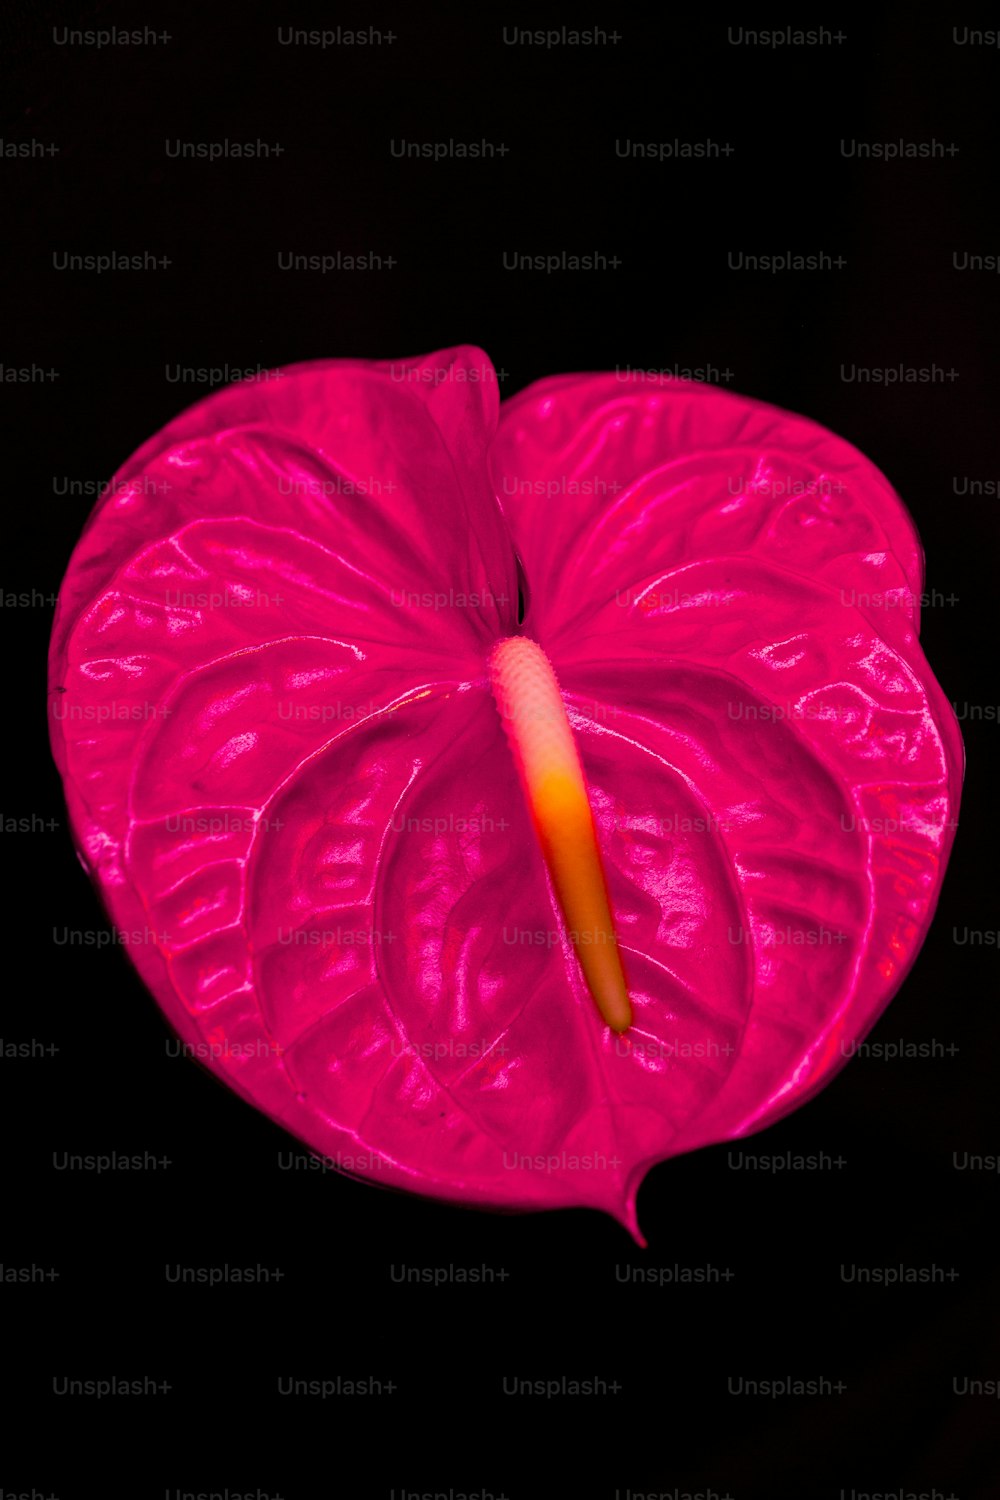 eine rosa Blume mit Wassertröpfchen darauf